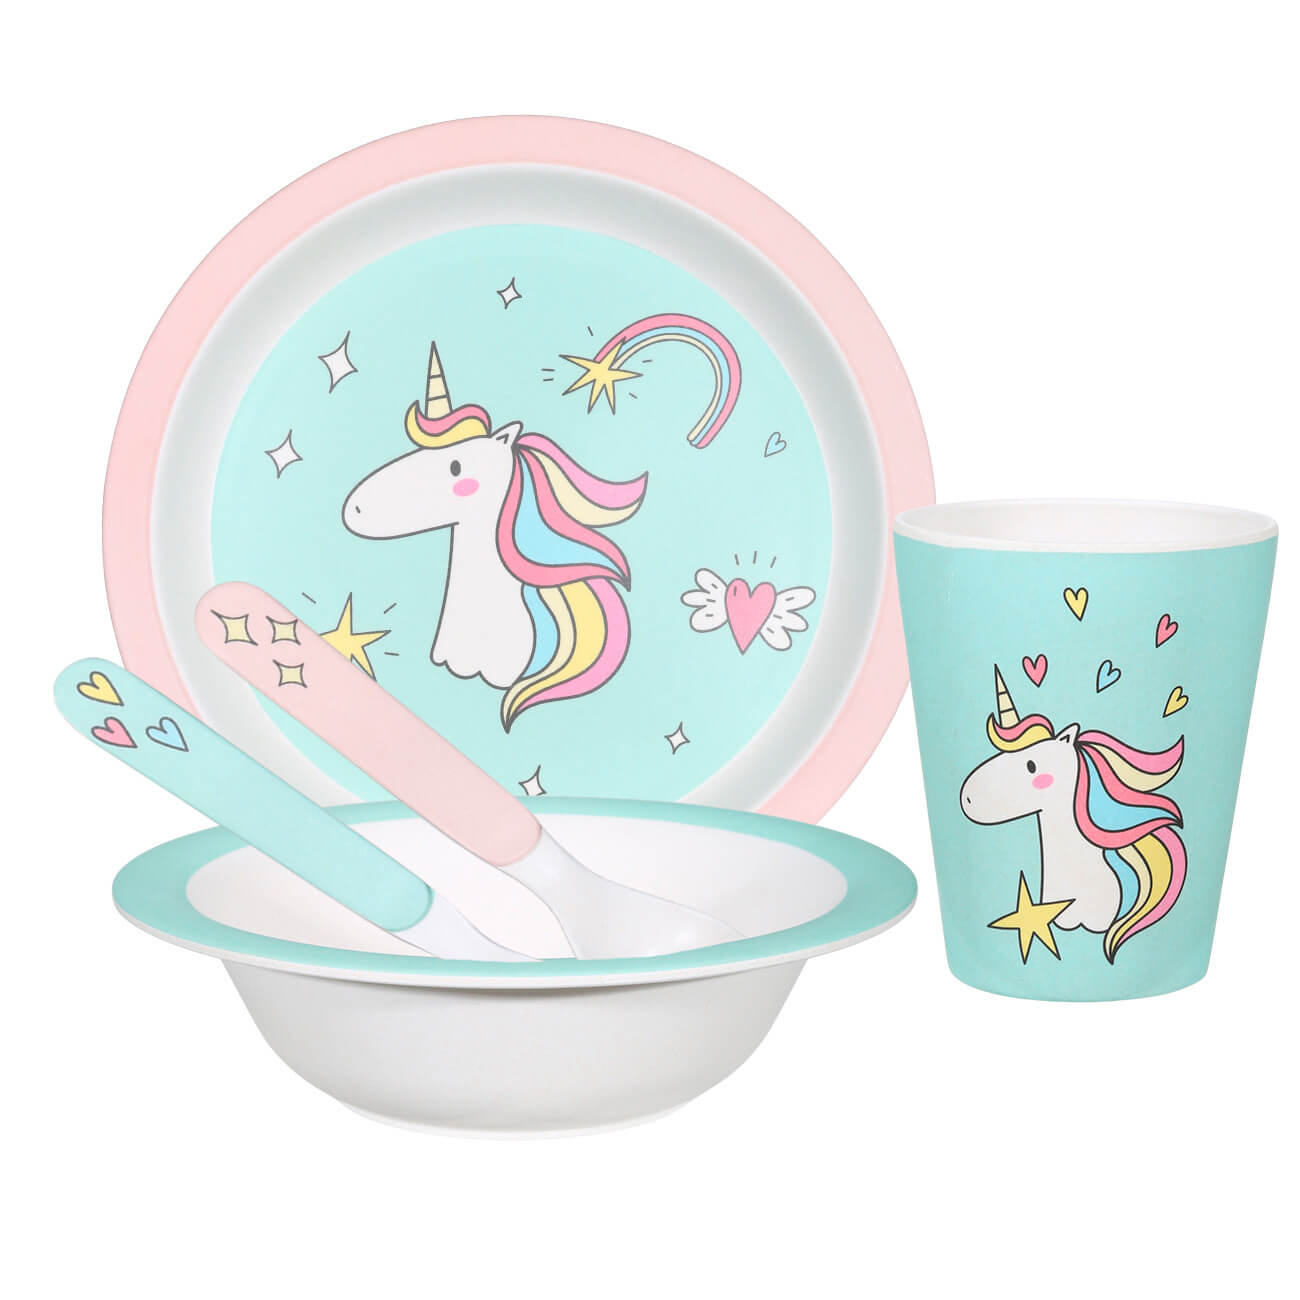 Набор посуды, детский, 5 пр, бамбук, розово-мятный, Единорог, Unicorn набор посуды детский 3 пр фарфор f бело розовый единорог в облаках unicorn